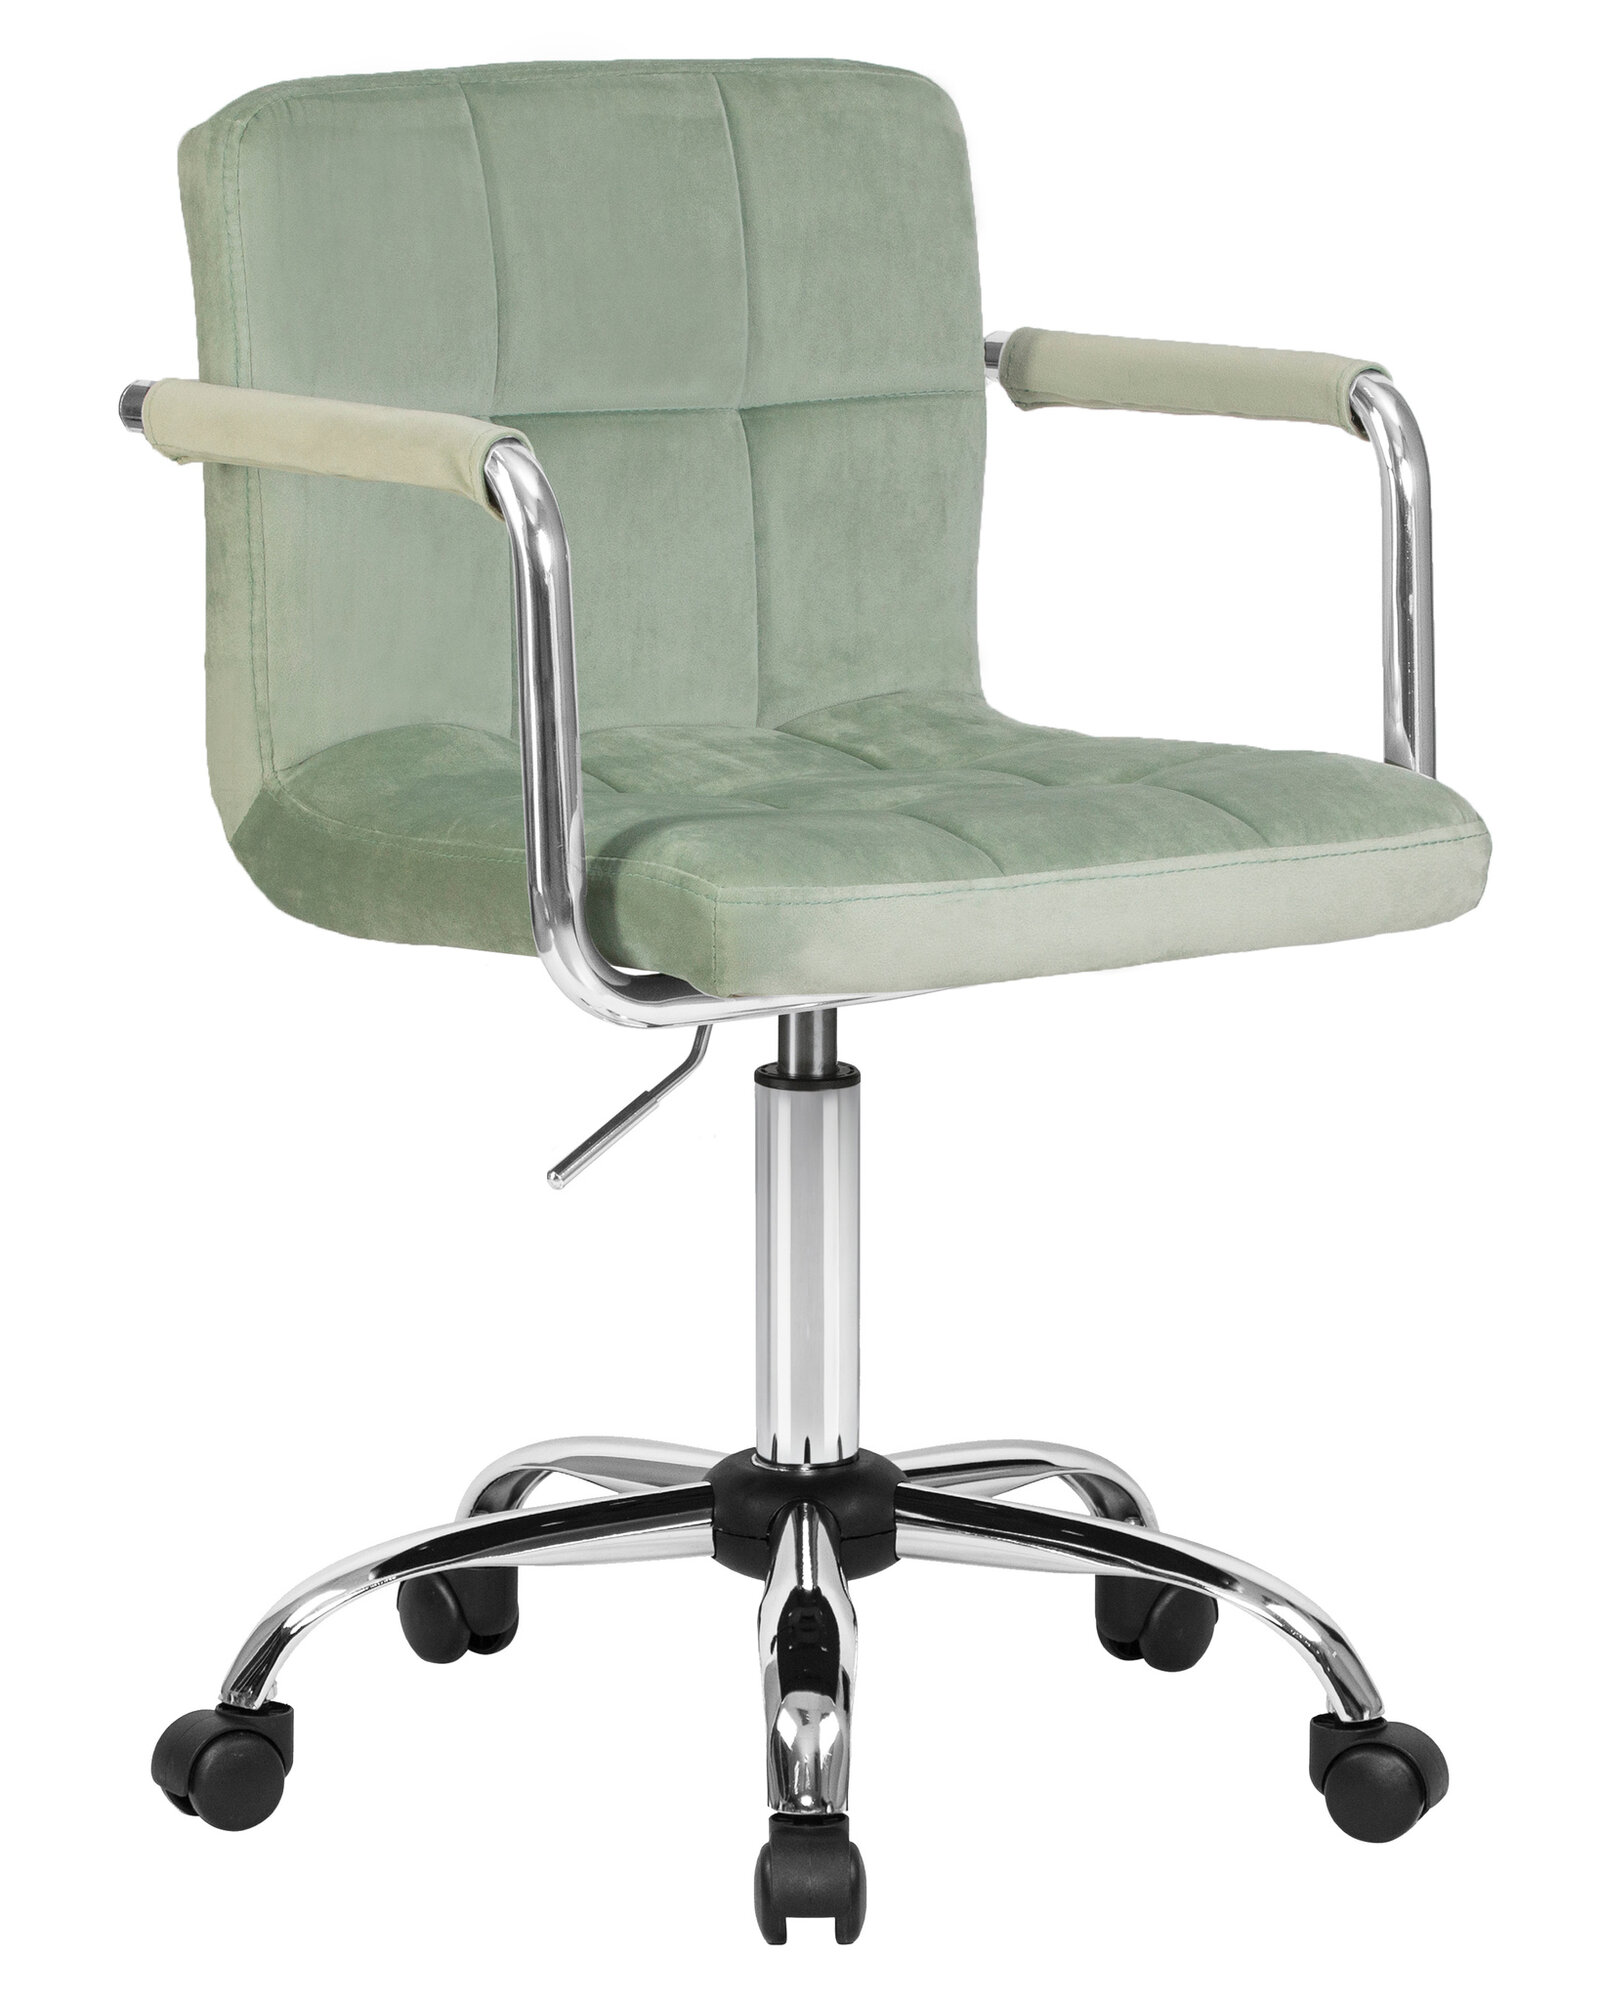 Офисное кресло для персонала DOBRIN TERRY LM-9400 цвет сиденья мятный велюр (MJ9-87), цвет основания хромированная сталь